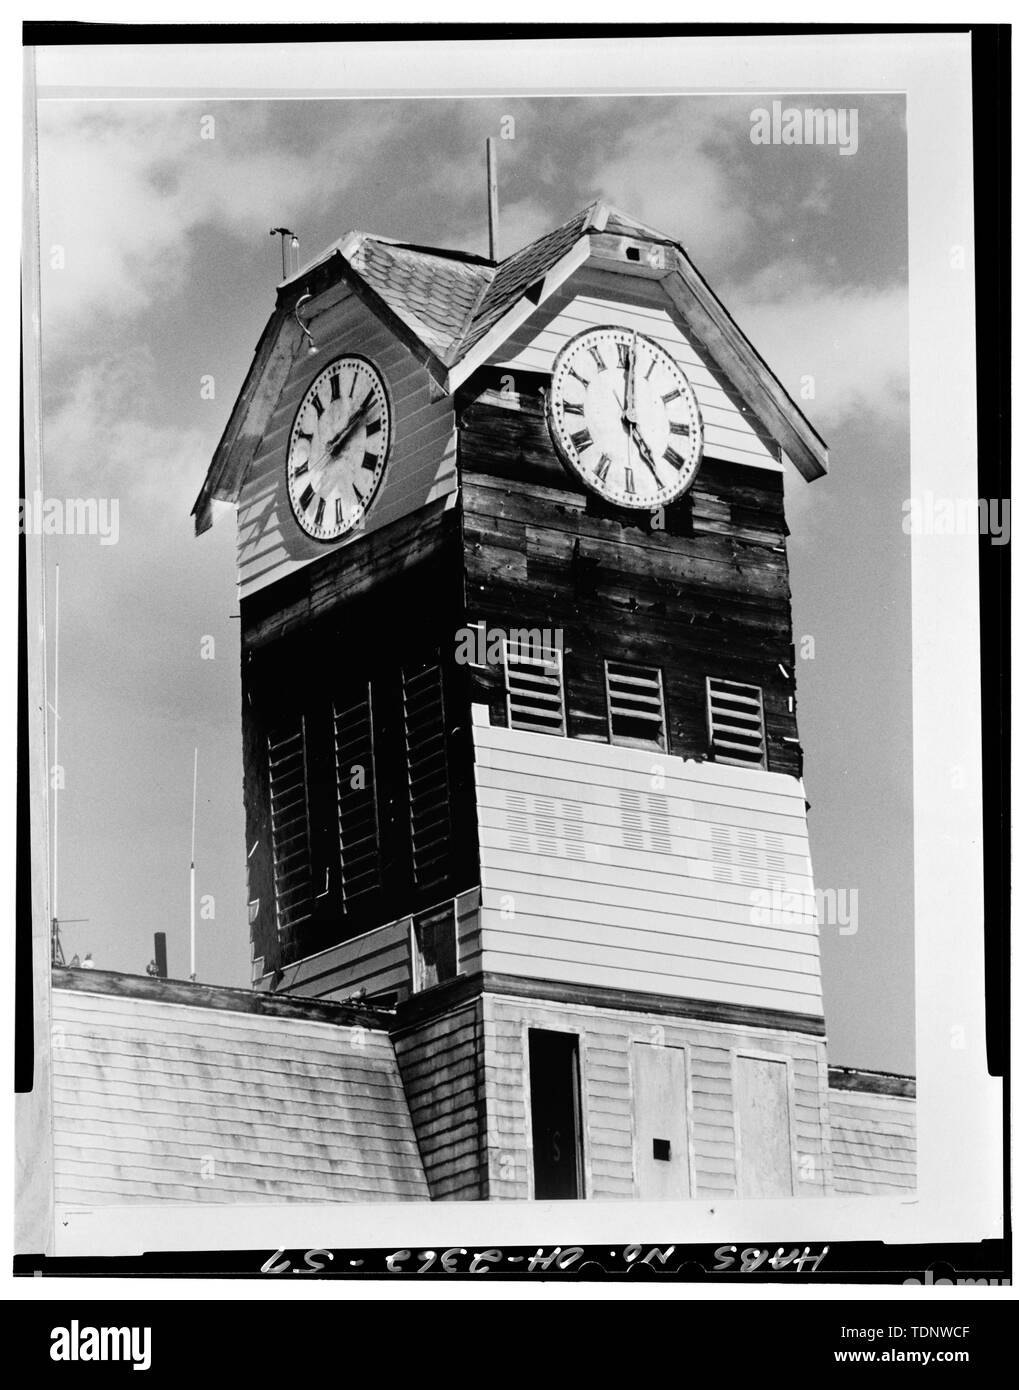 Fotokopie des Foto (von der Planung Ressourcen Datei, 3. Oktober 1989) Clock Tower, AUS DEM SÜDWESTEN - Crestline Rathaus, Bucyrus und Thoman Straßen, Crestline, Crawford County, OH Stockfoto